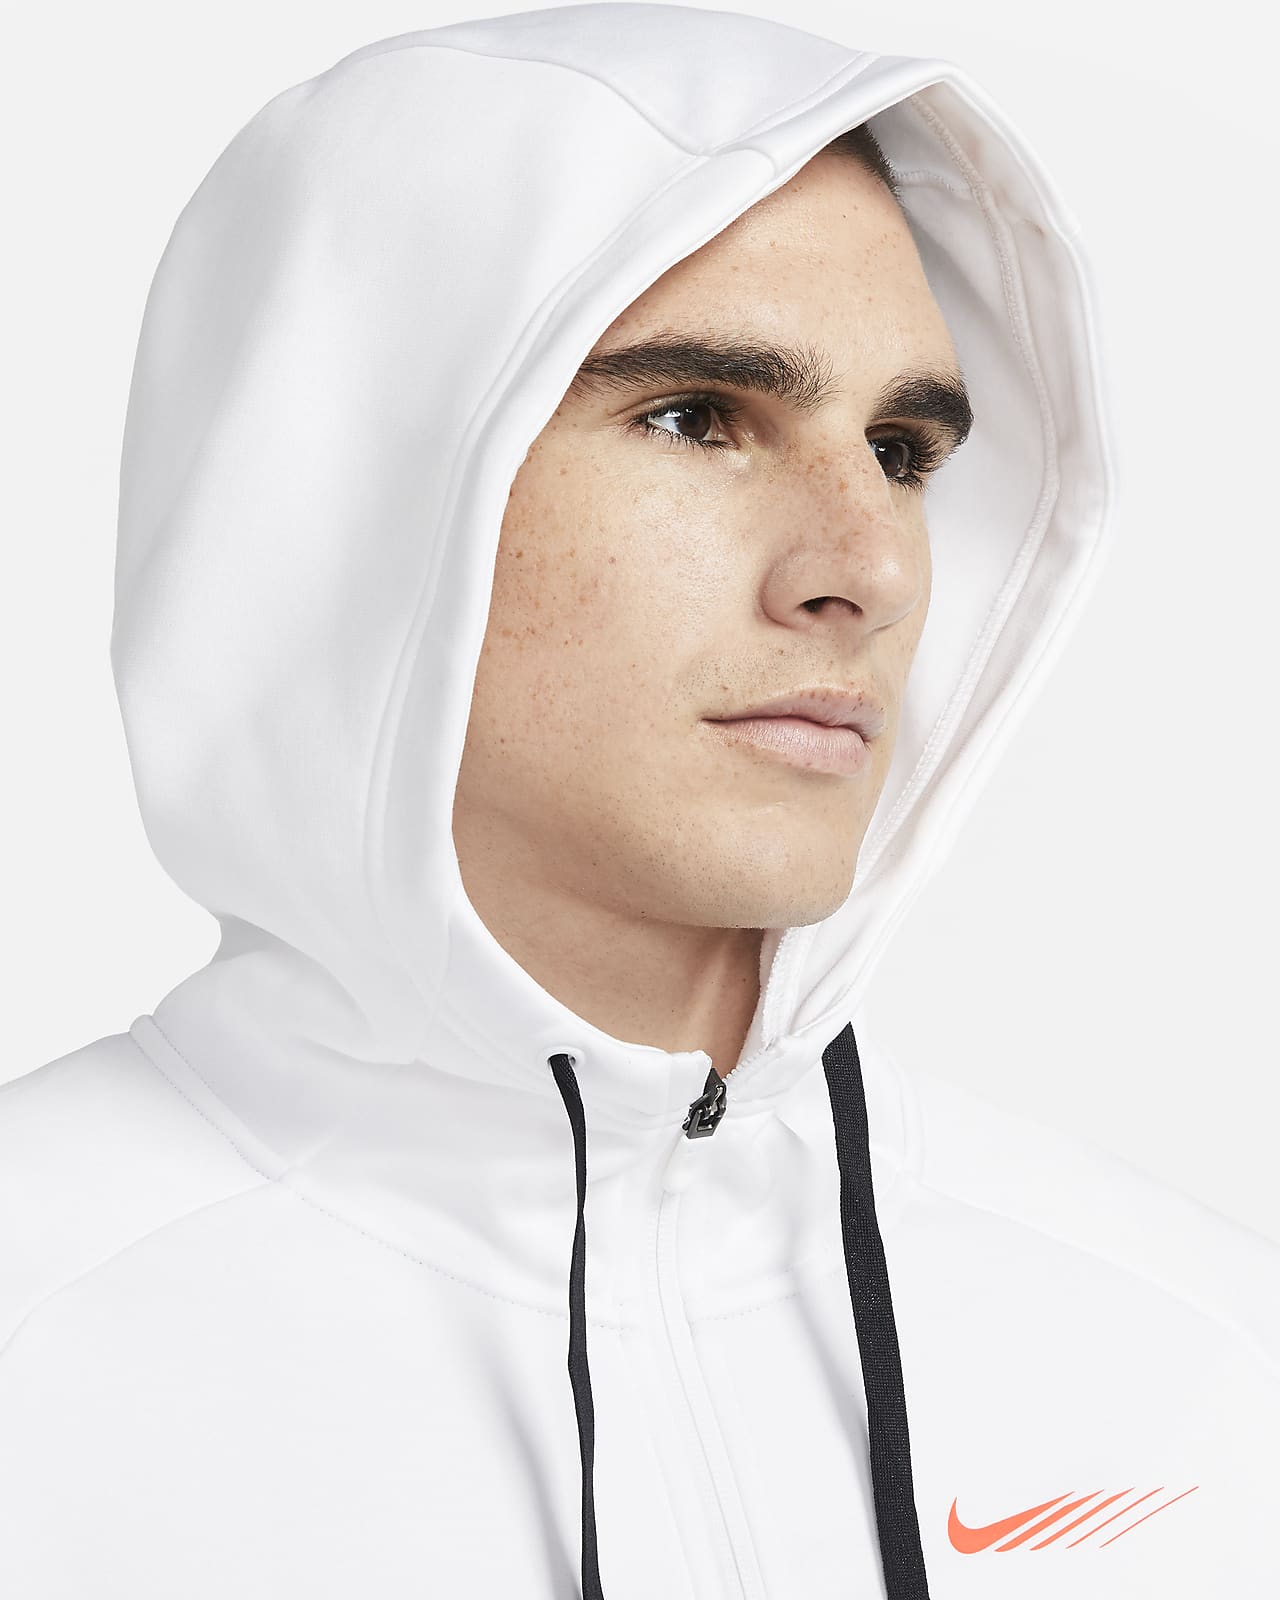 Nike公式 ナイキ サーマ スポーツ クラッシュ メンズ フルジップ トレーニングパーカー オンラインストア 通販サイト